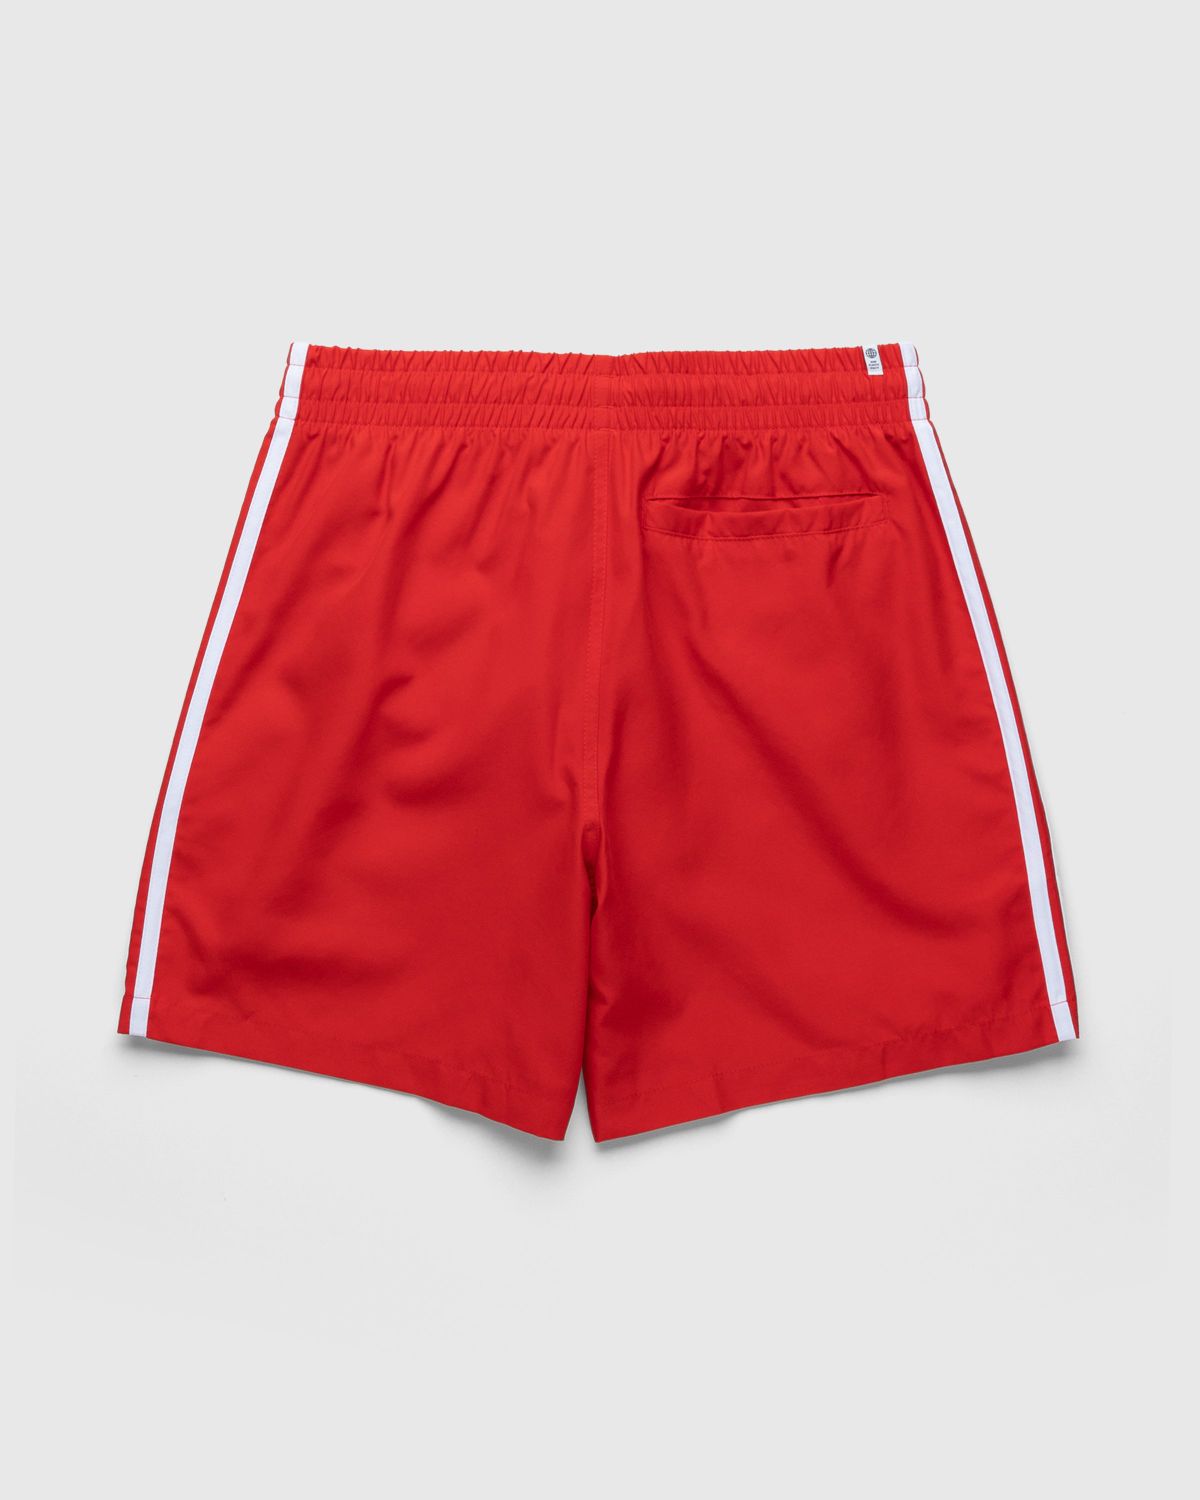 Adidas – Classic 3-Stripes Swim Shorts Vivid Red